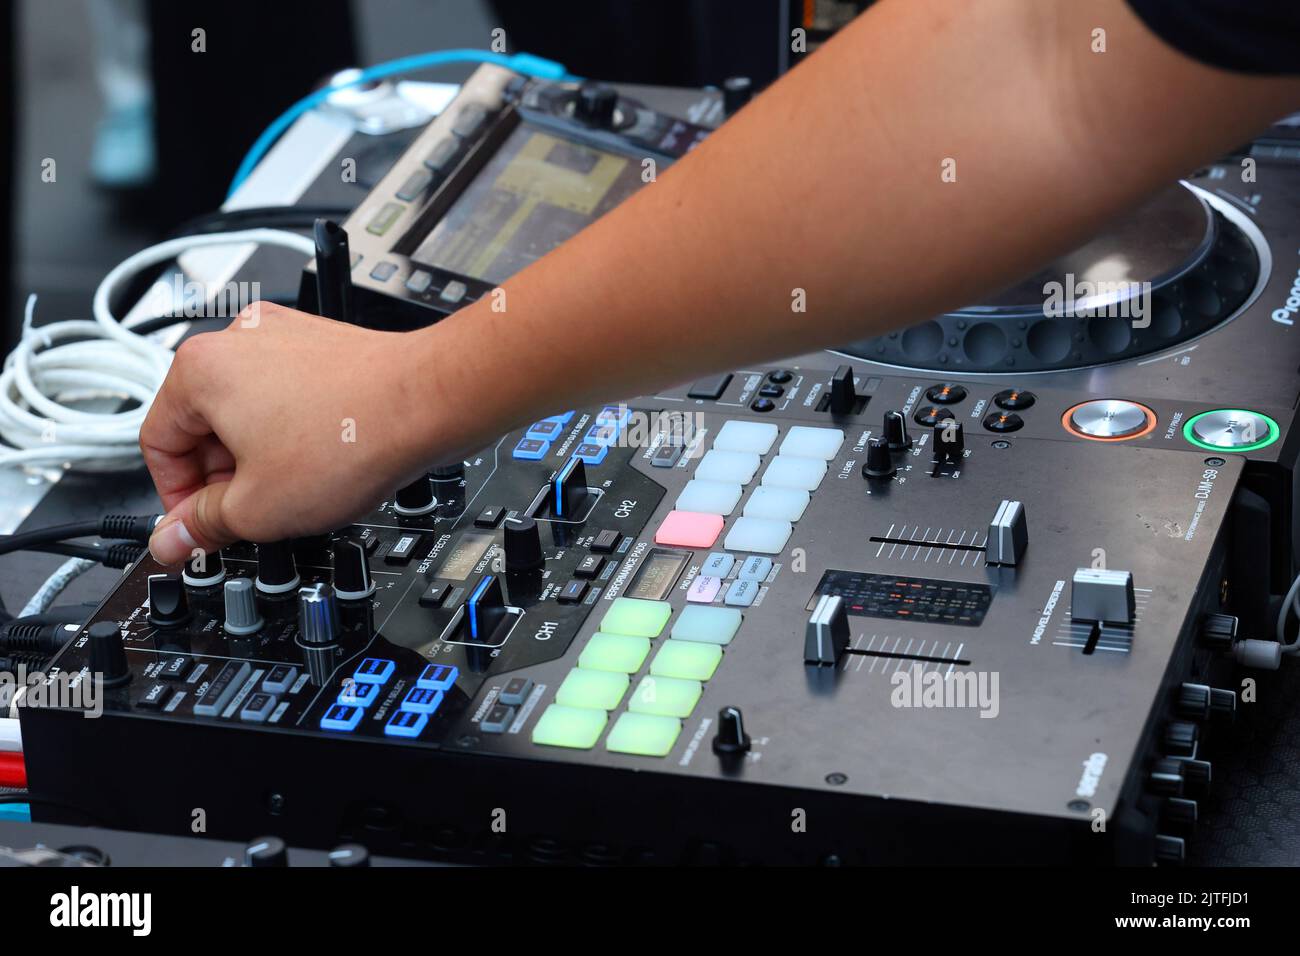 Un DJ de fête tourne un bouton sur un plateau de mixage numérique Pioneer DJM-S9 pour régler les notes « Hi » sur une piste de musique lors d'une fête de danse Banque D'Images